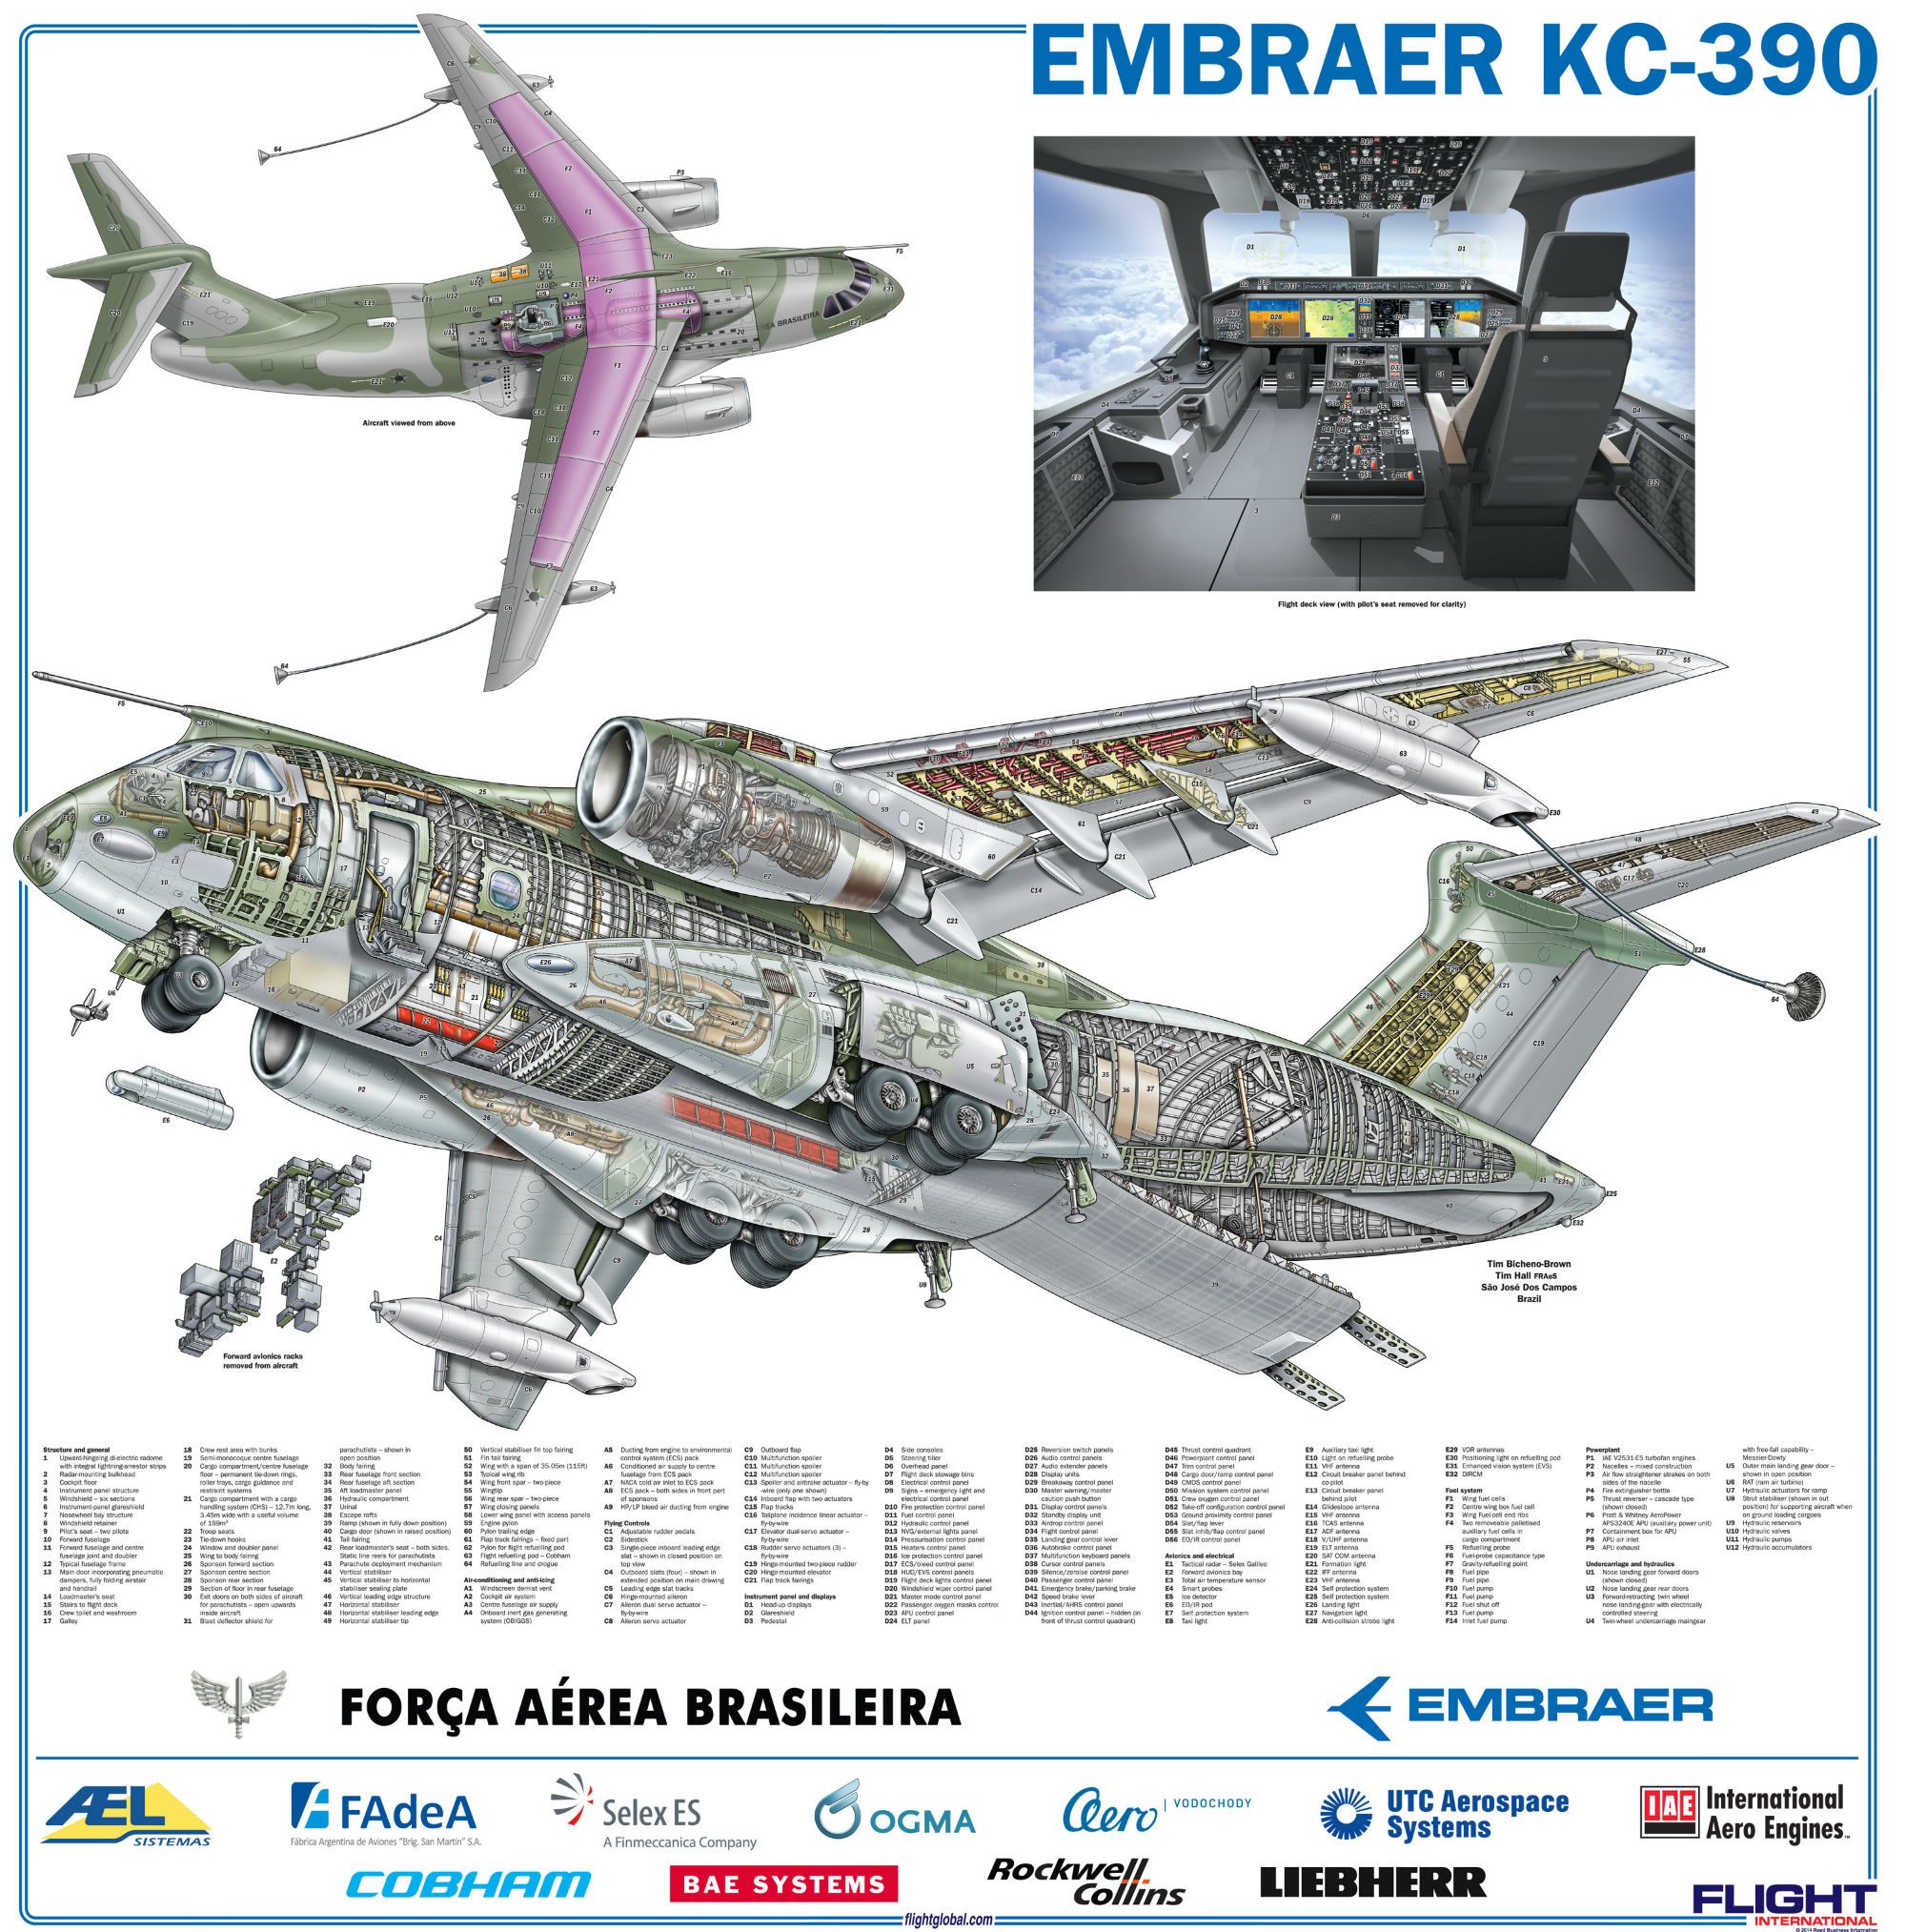 Vista em corte do KC-390. Clique na imagem para ampliar